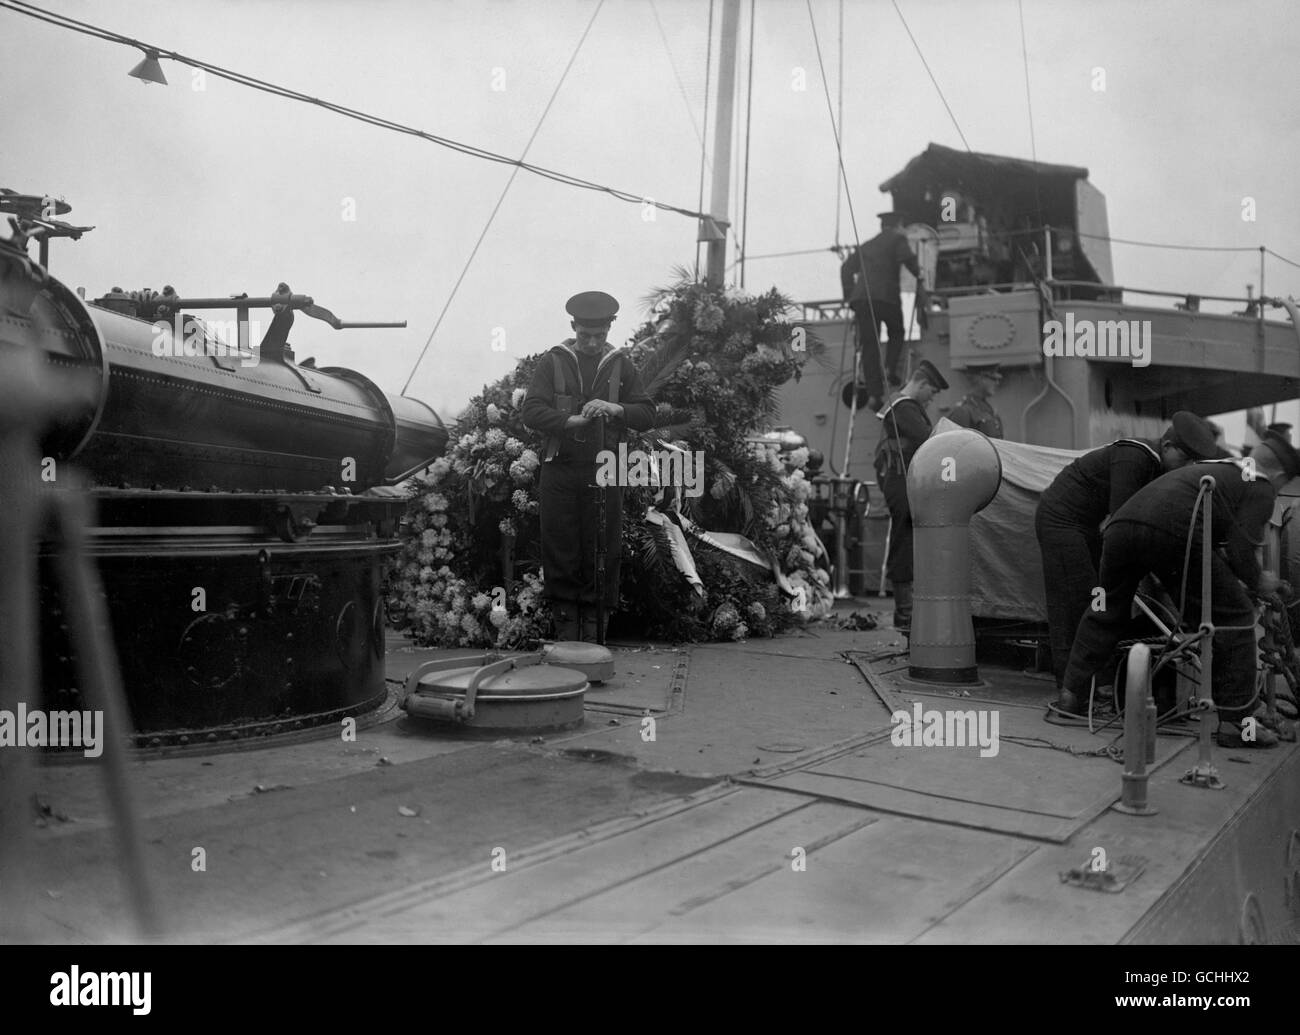 Royal Navy Bluejacks guardia la bara del guerriero sconosciuto A bordo dell'HMS Verdun prima di essere portato all'Abbazia di Westminster Per sepoltura Foto Stock